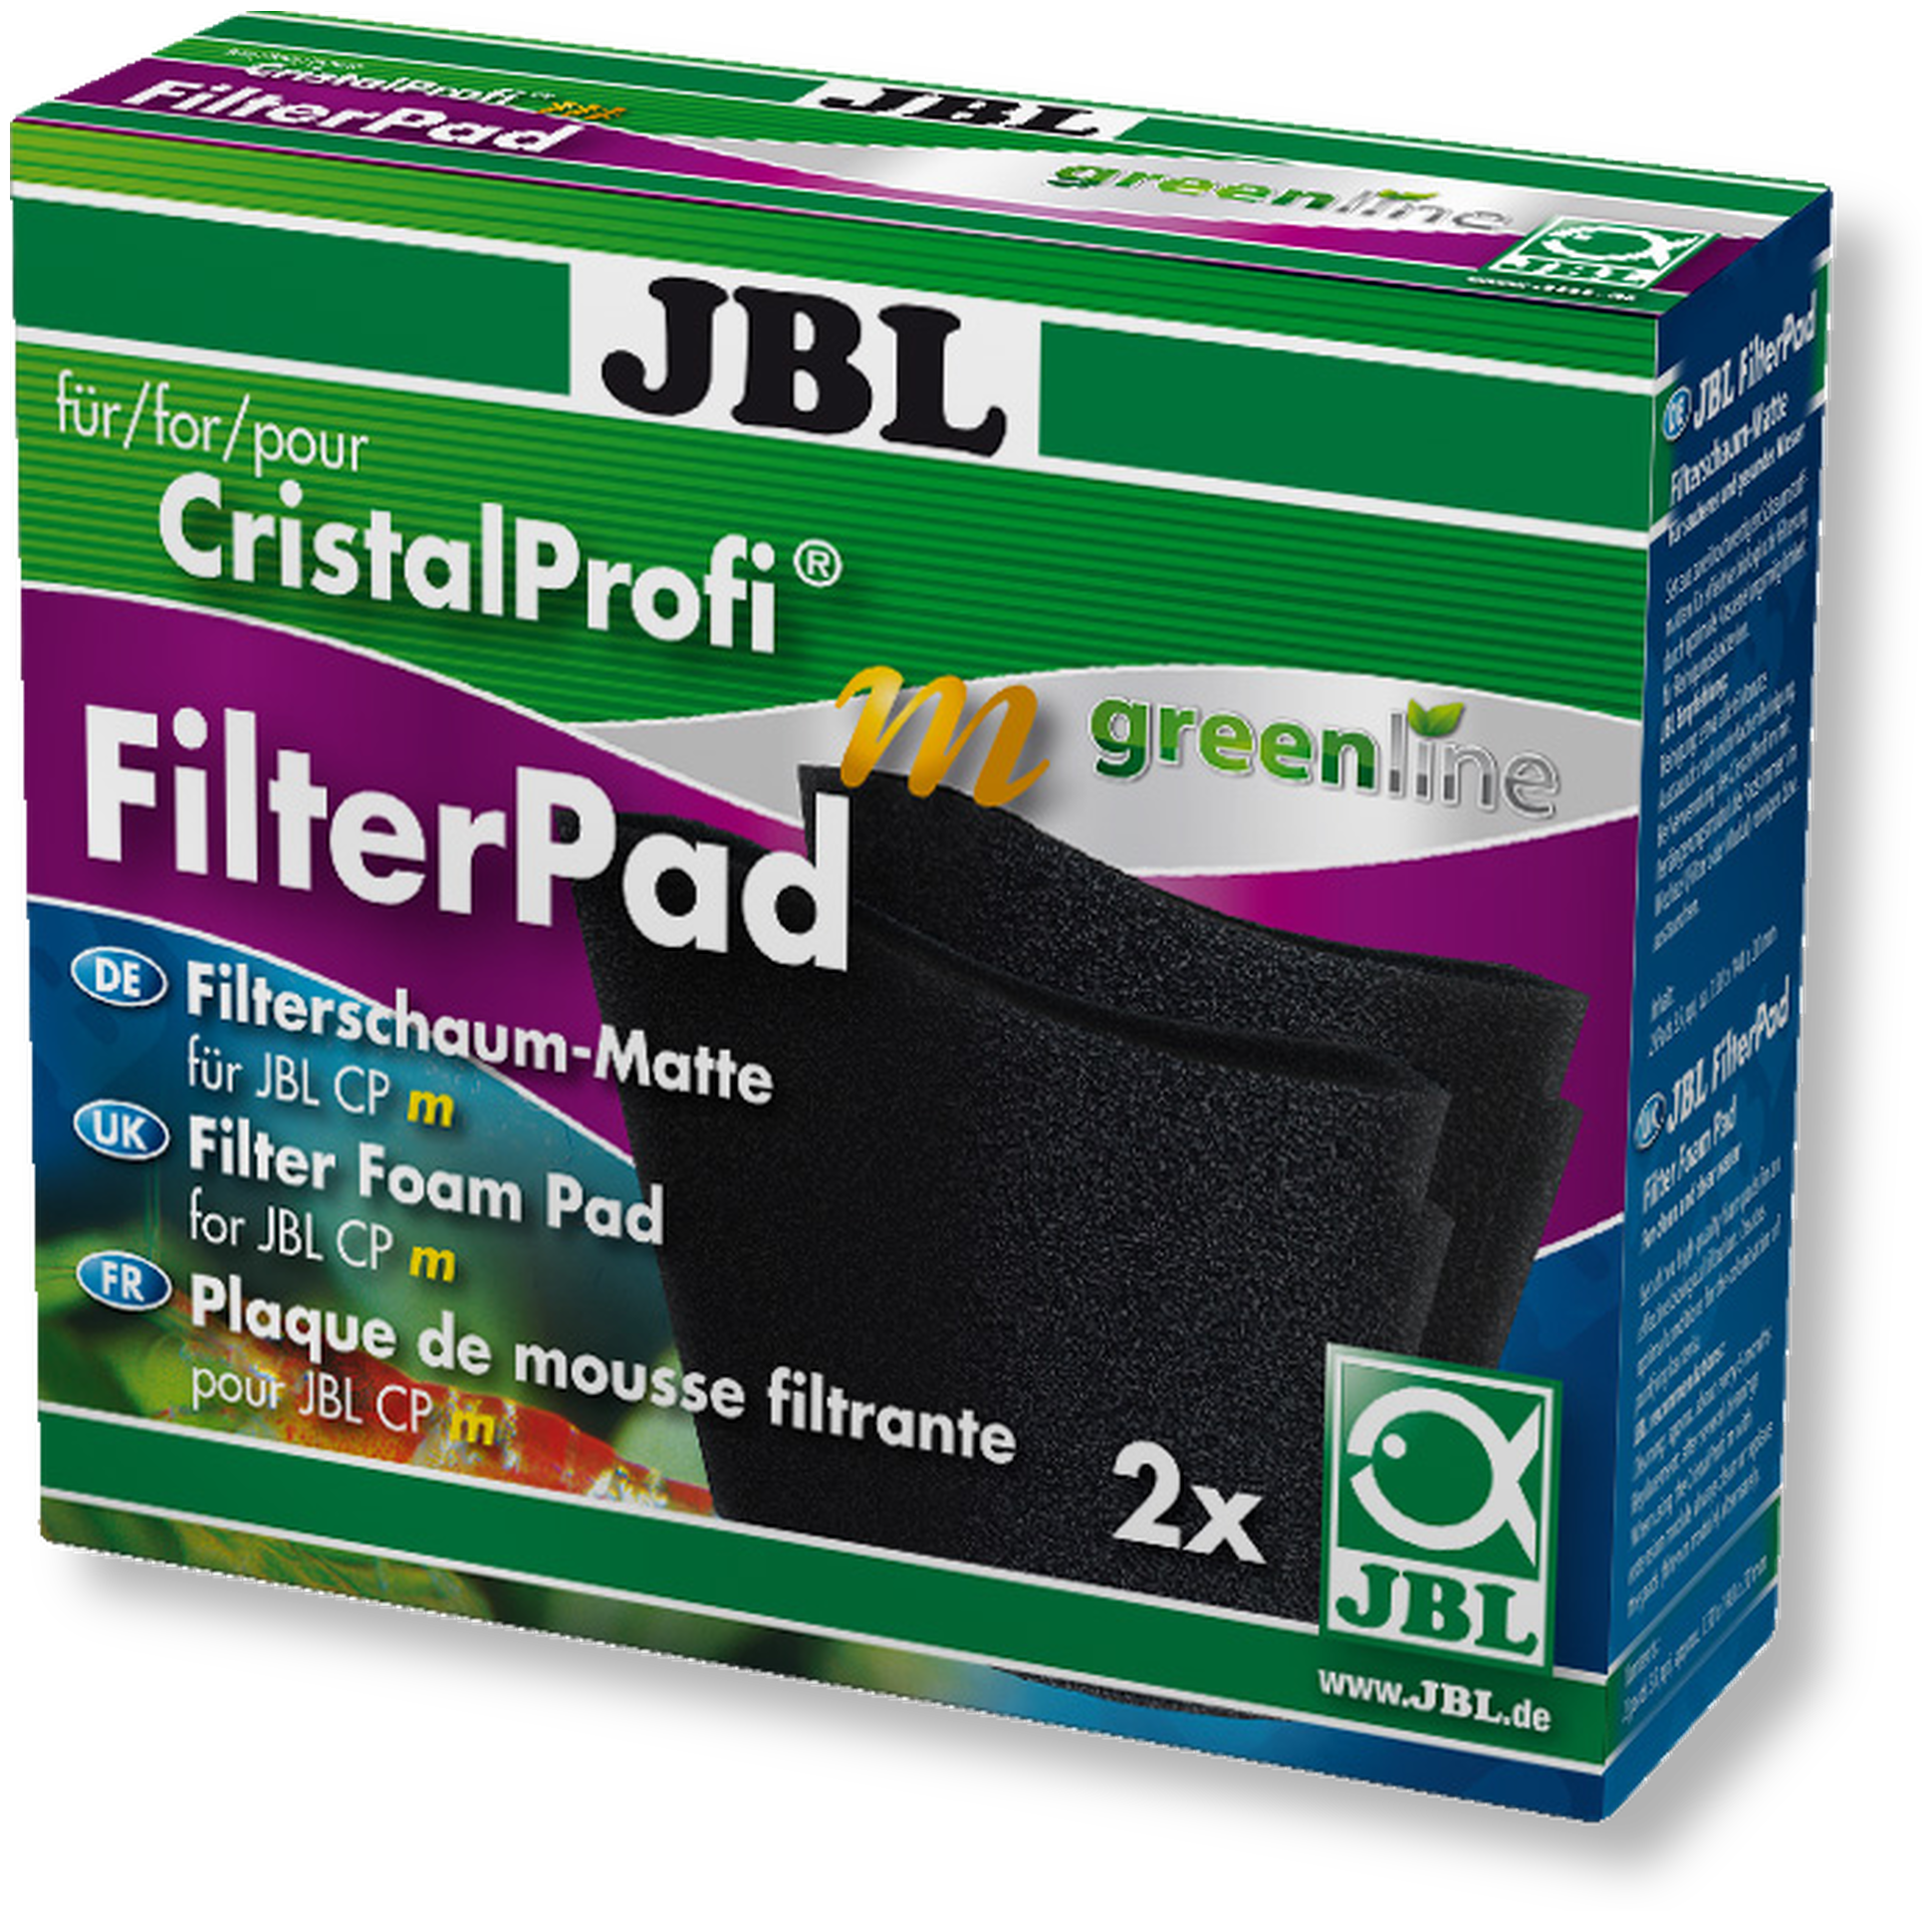 JBL FilterPad, CristalProfi m, 2 Stk.